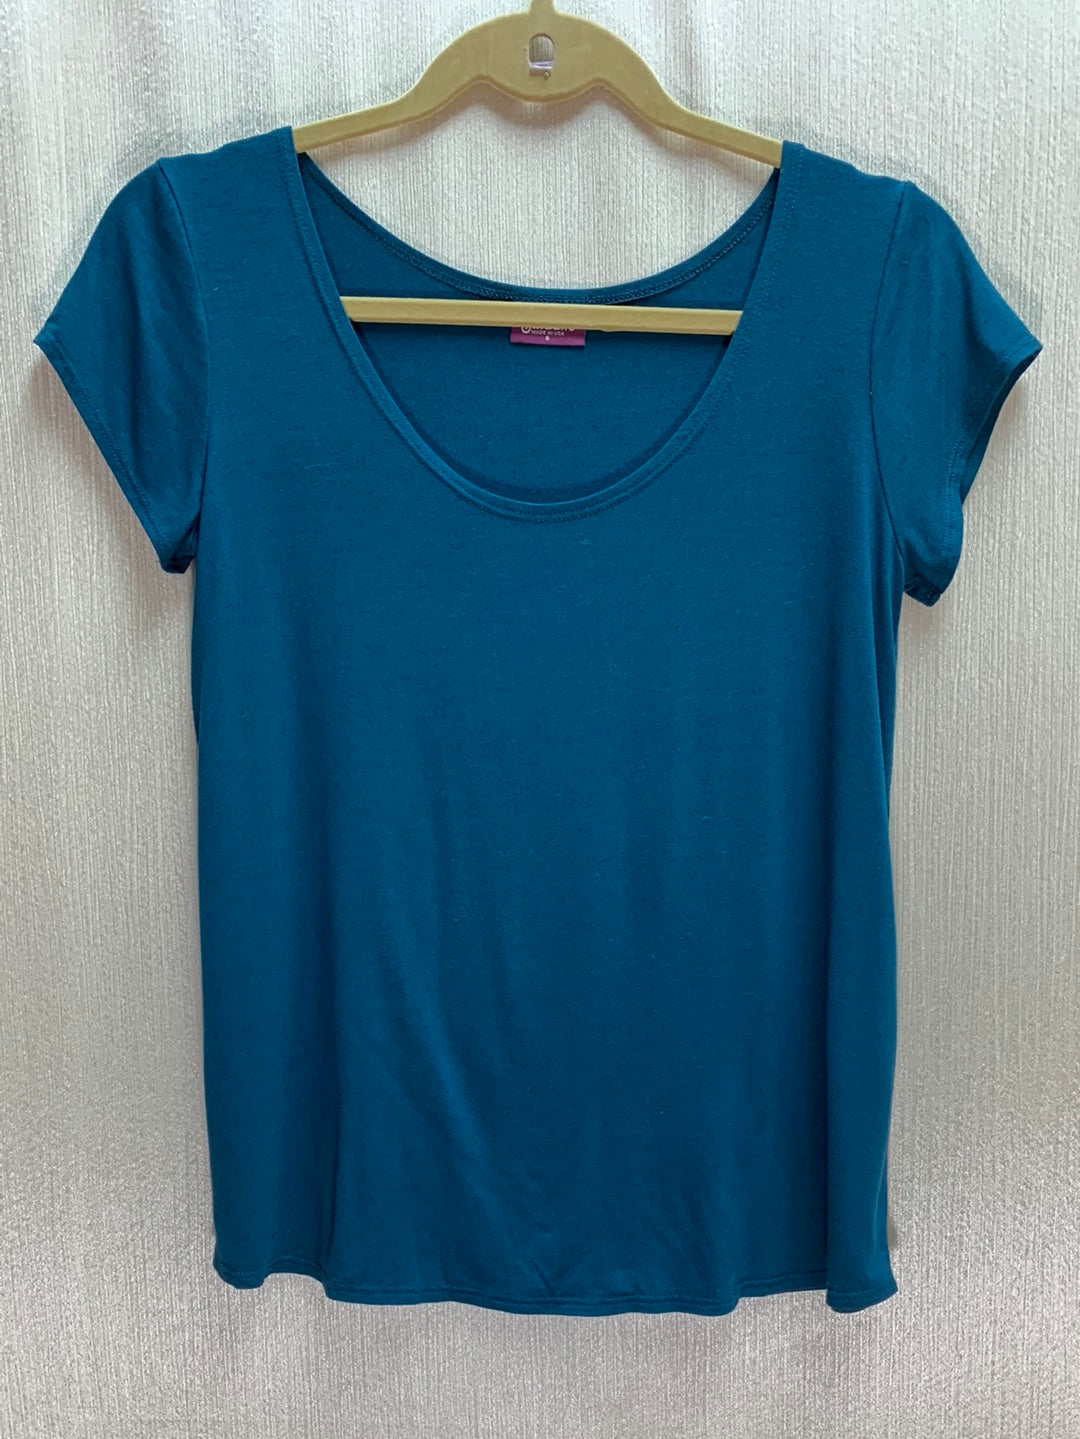 SALAAM marine teal blue Rayon Short Sleeve Cora Tee Shirt - S